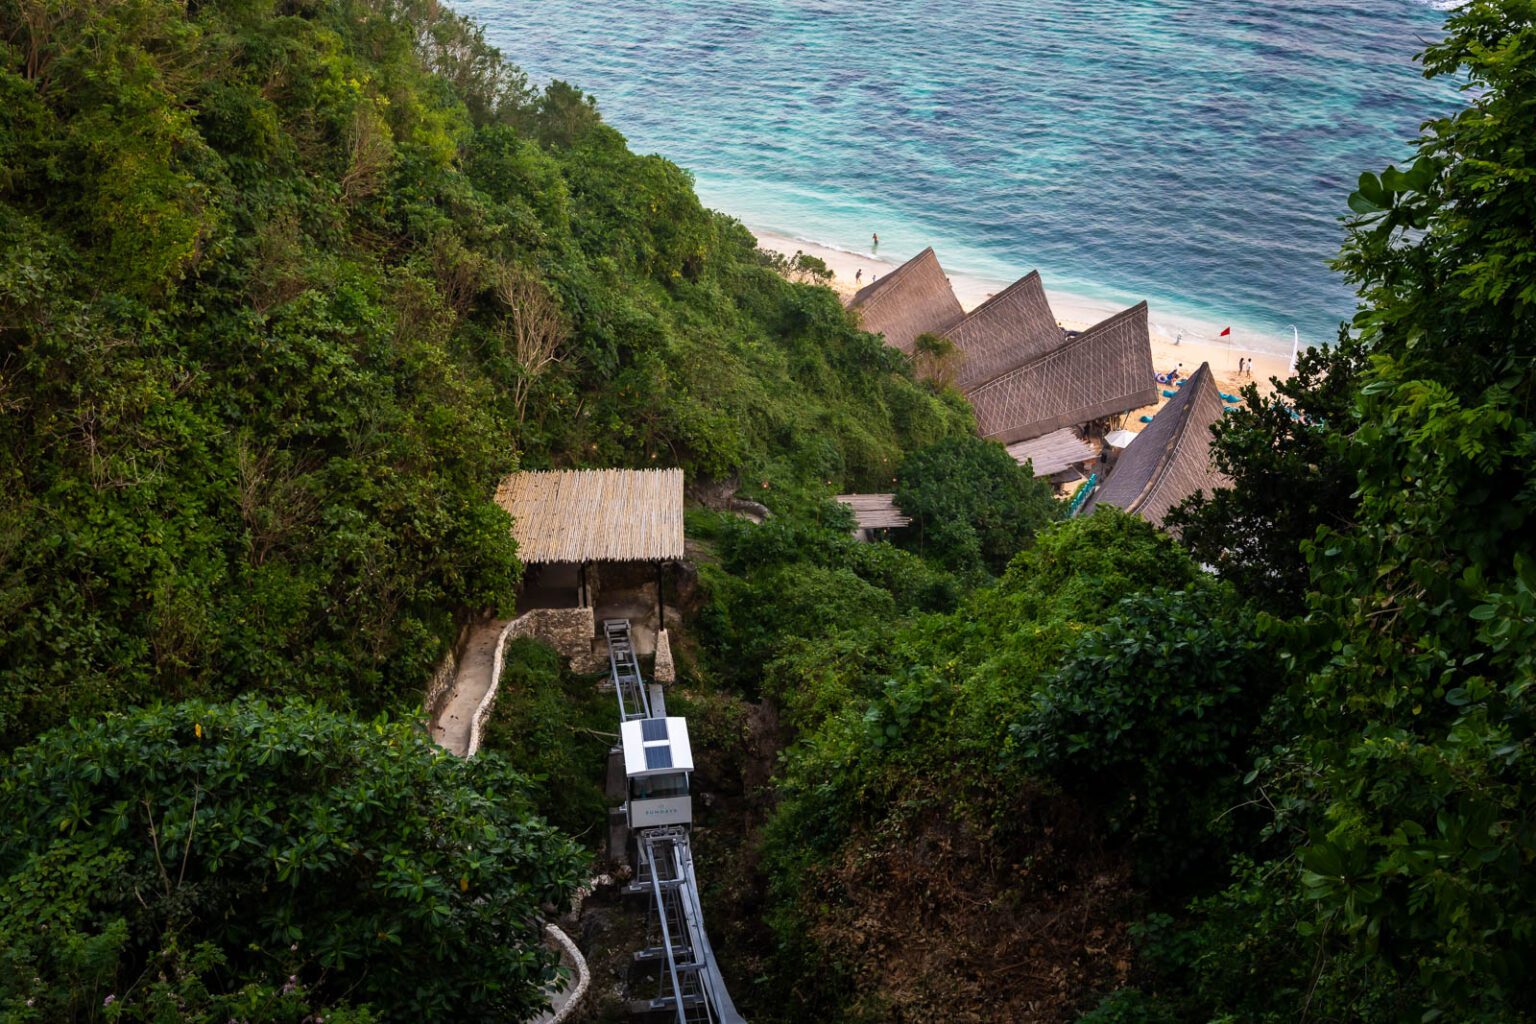 Funicular at Sunday's Beach Club in Uluwatu from the cliffs